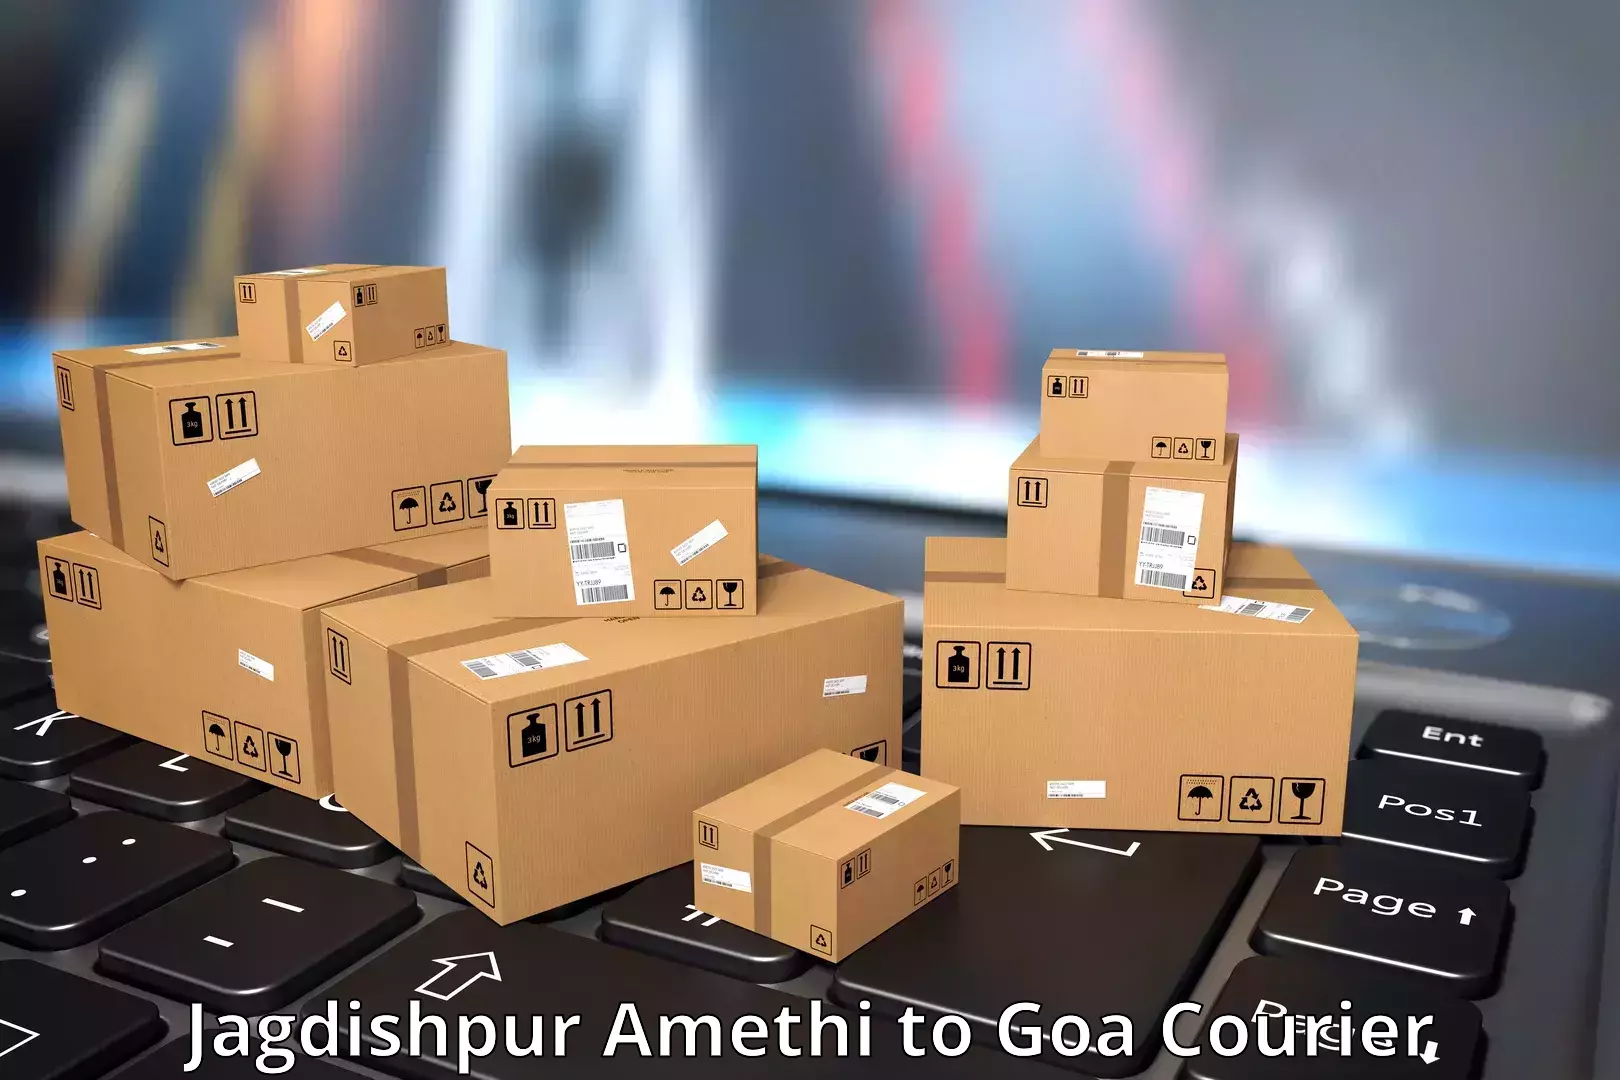 Professional courier handling Jagdishpur Amethi to Canacona